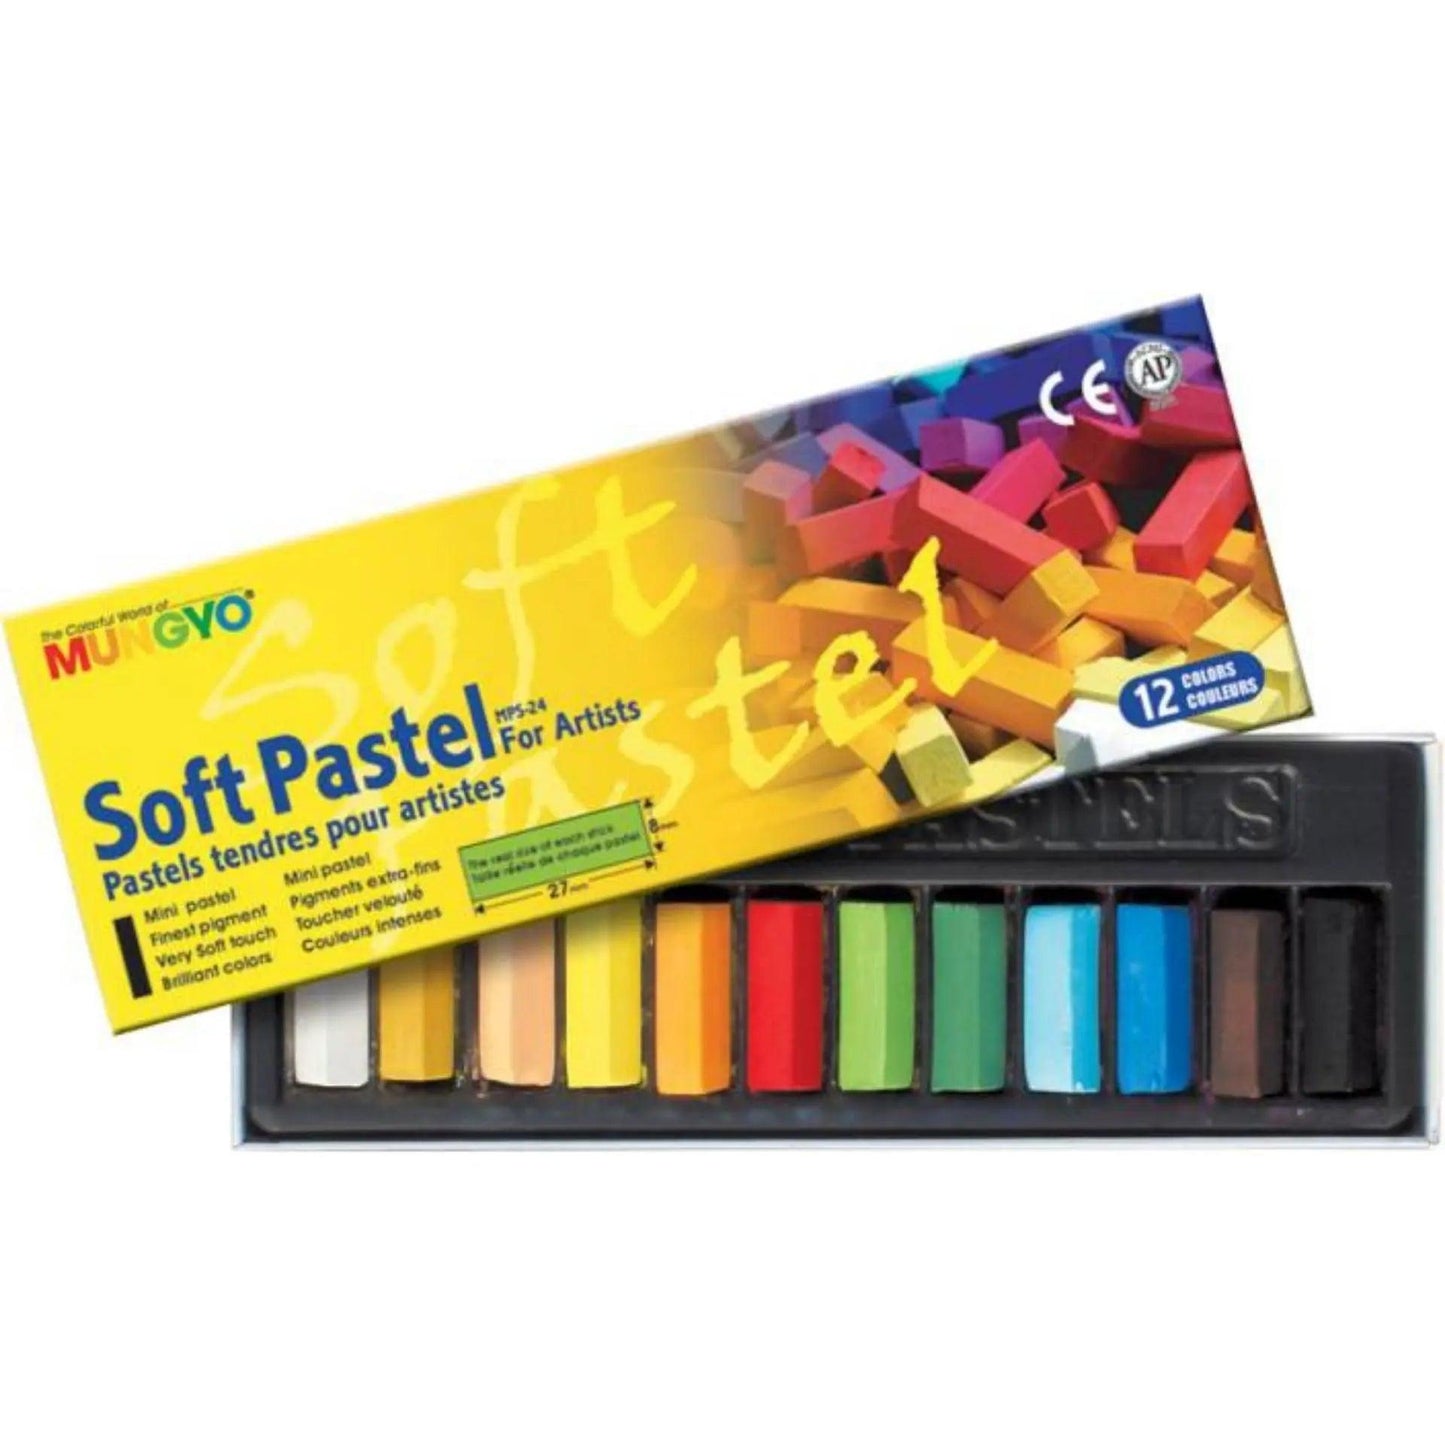 MUNGYO Soft Pastels for Artist 12 Pieces Color Set MPS - 12 - Multi Colors thestationers